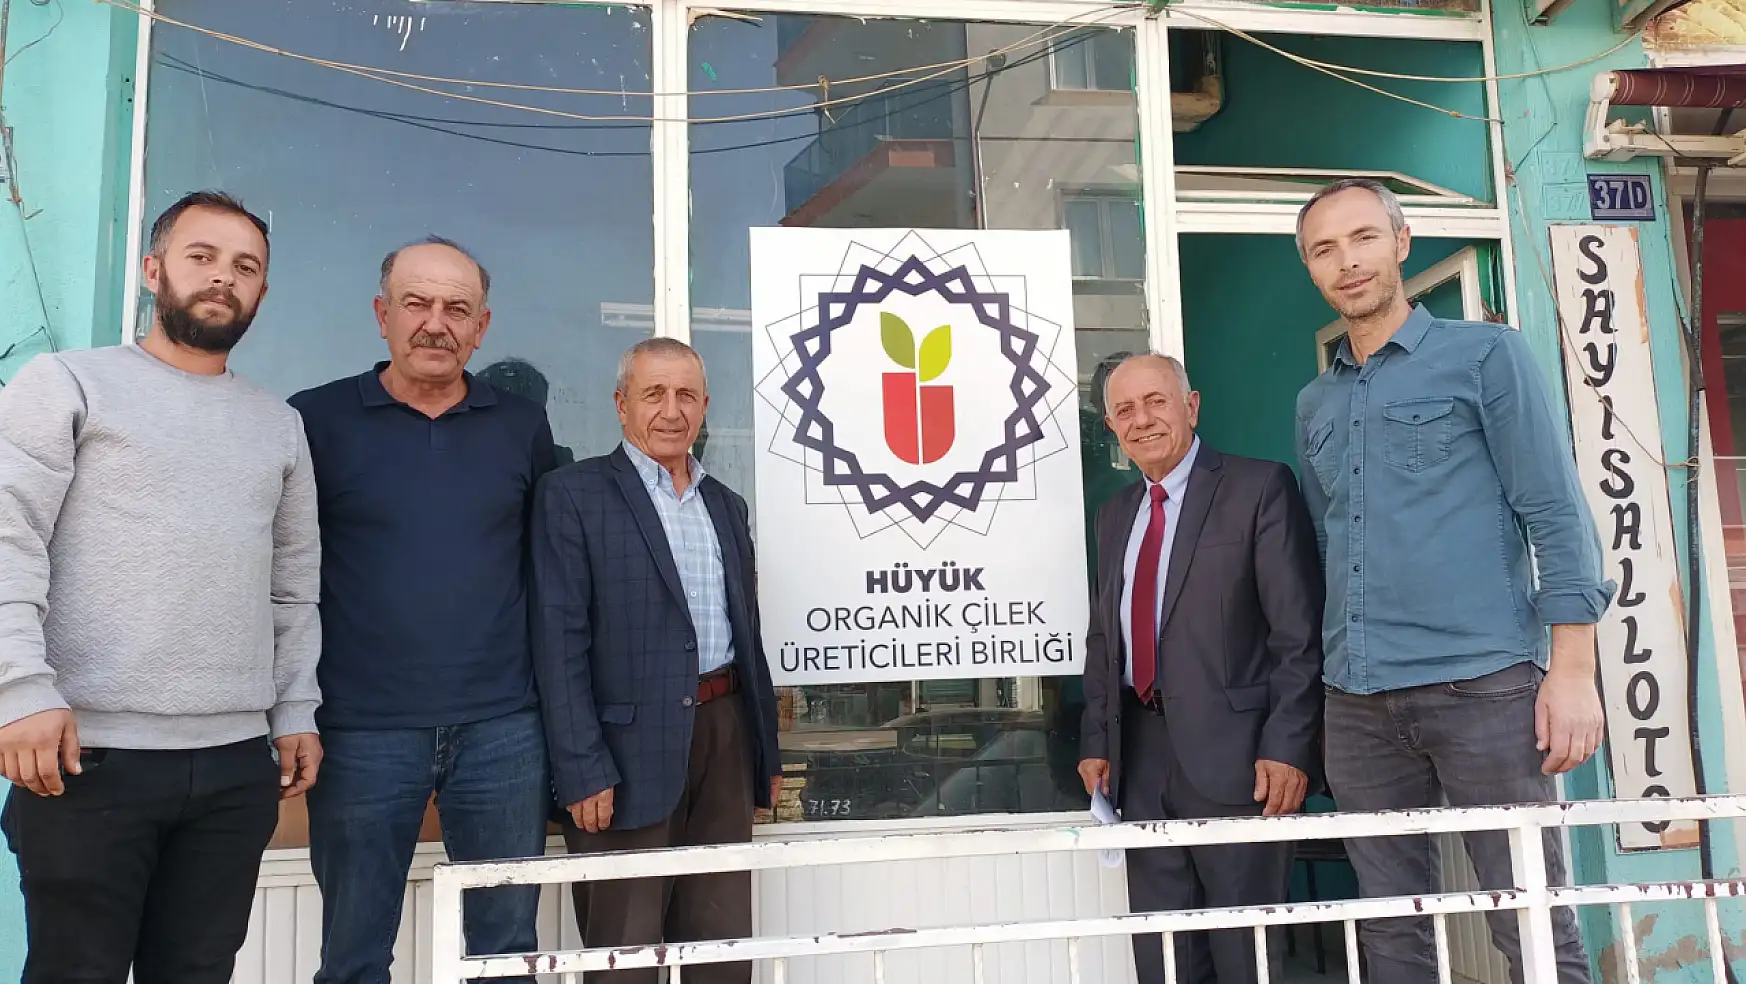 Konya'da Hüyük Organik Çilek Üreticileri Birliği Genel Kurulu yapıldı!Muhammed Özer güven tazeledi!